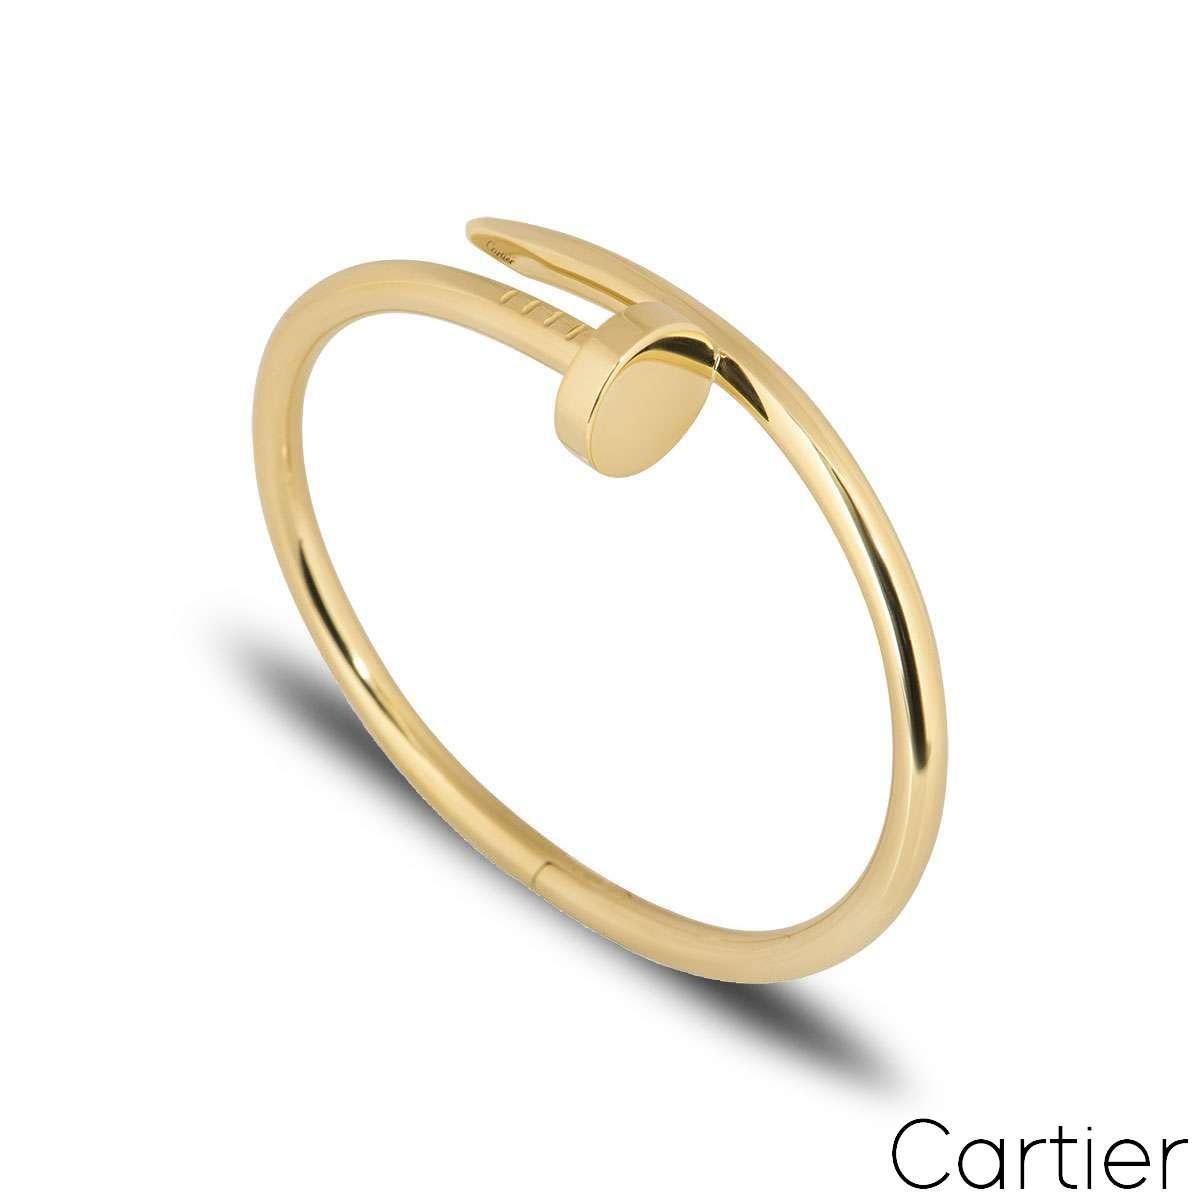 Ein 18k Gelbgold Juste un Clou Armband von Cartier. Das Armband wird mit einem Nagelkopf an einem Ende und dem Ende eines Nagels am anderen Ende umwickelt. Dieses Armband in Größe 16 verfügt über einen neuen Verschluss und wiegt brutto 31,4